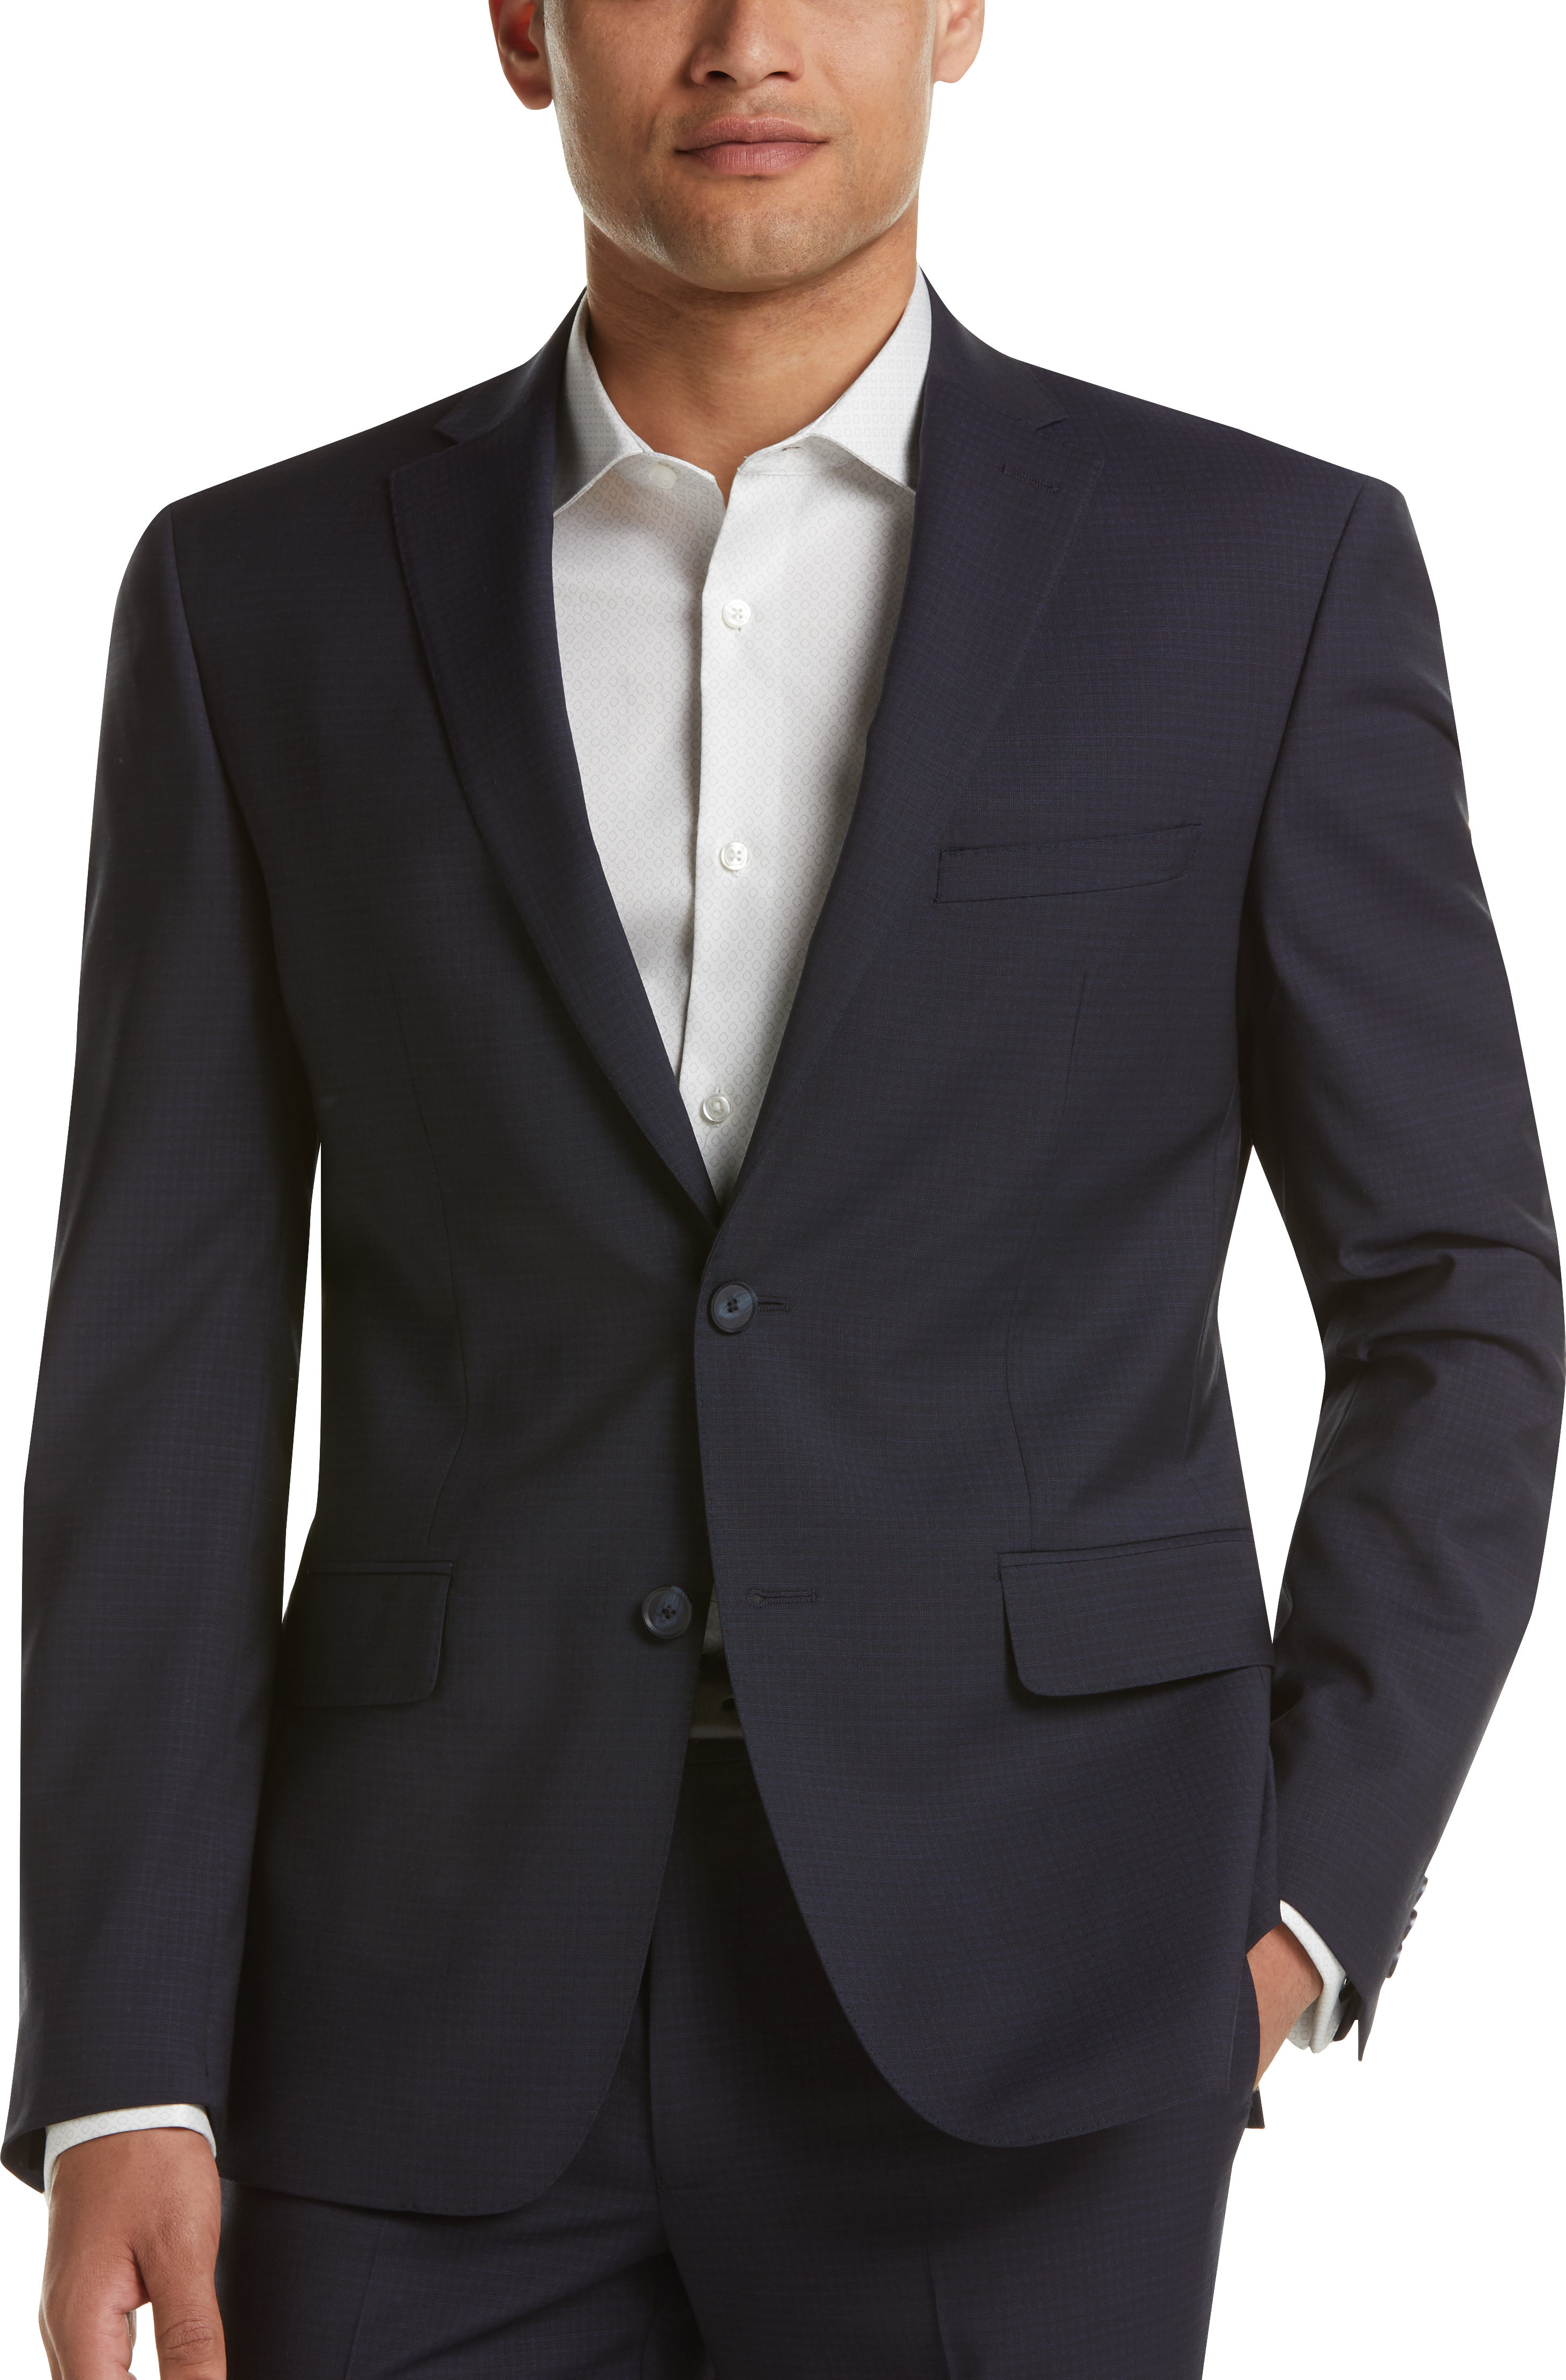 DKNY Navy Check Extreme Slim Fit Suit - Men's Sale | Men's Wearhouse